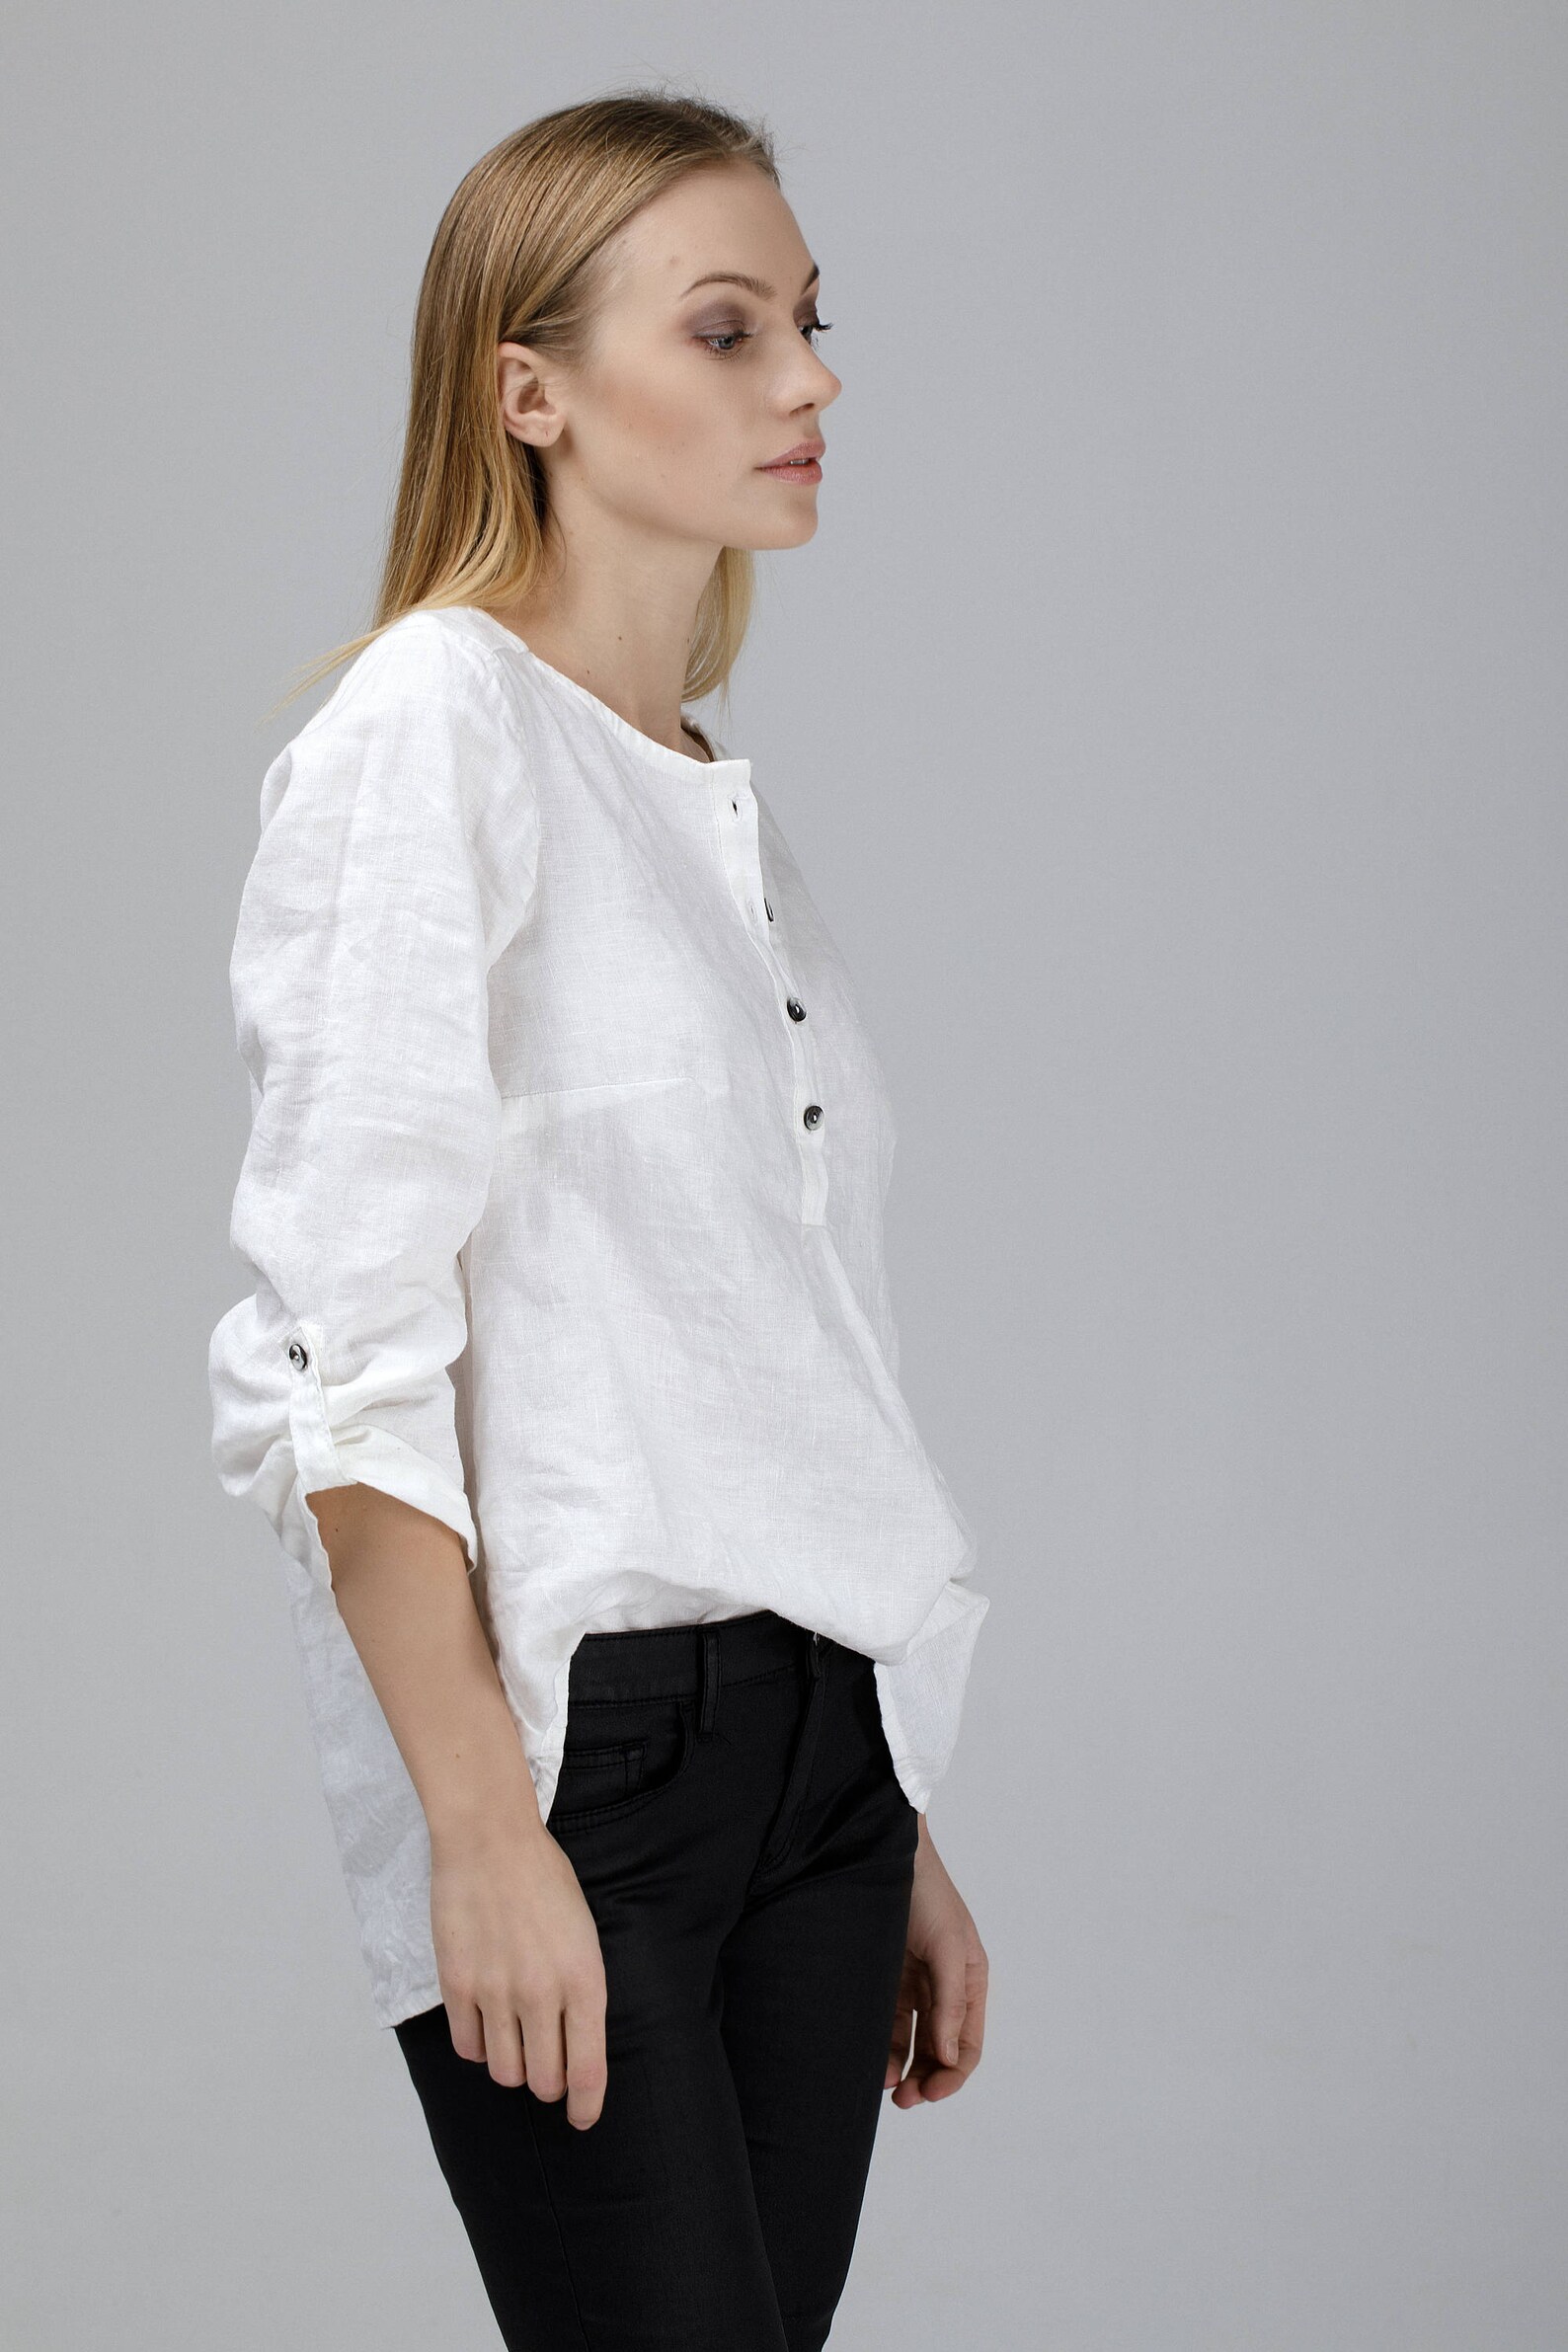 White Linen Shirt / Oversized Shirt / White Linen Tunic / - Etsy